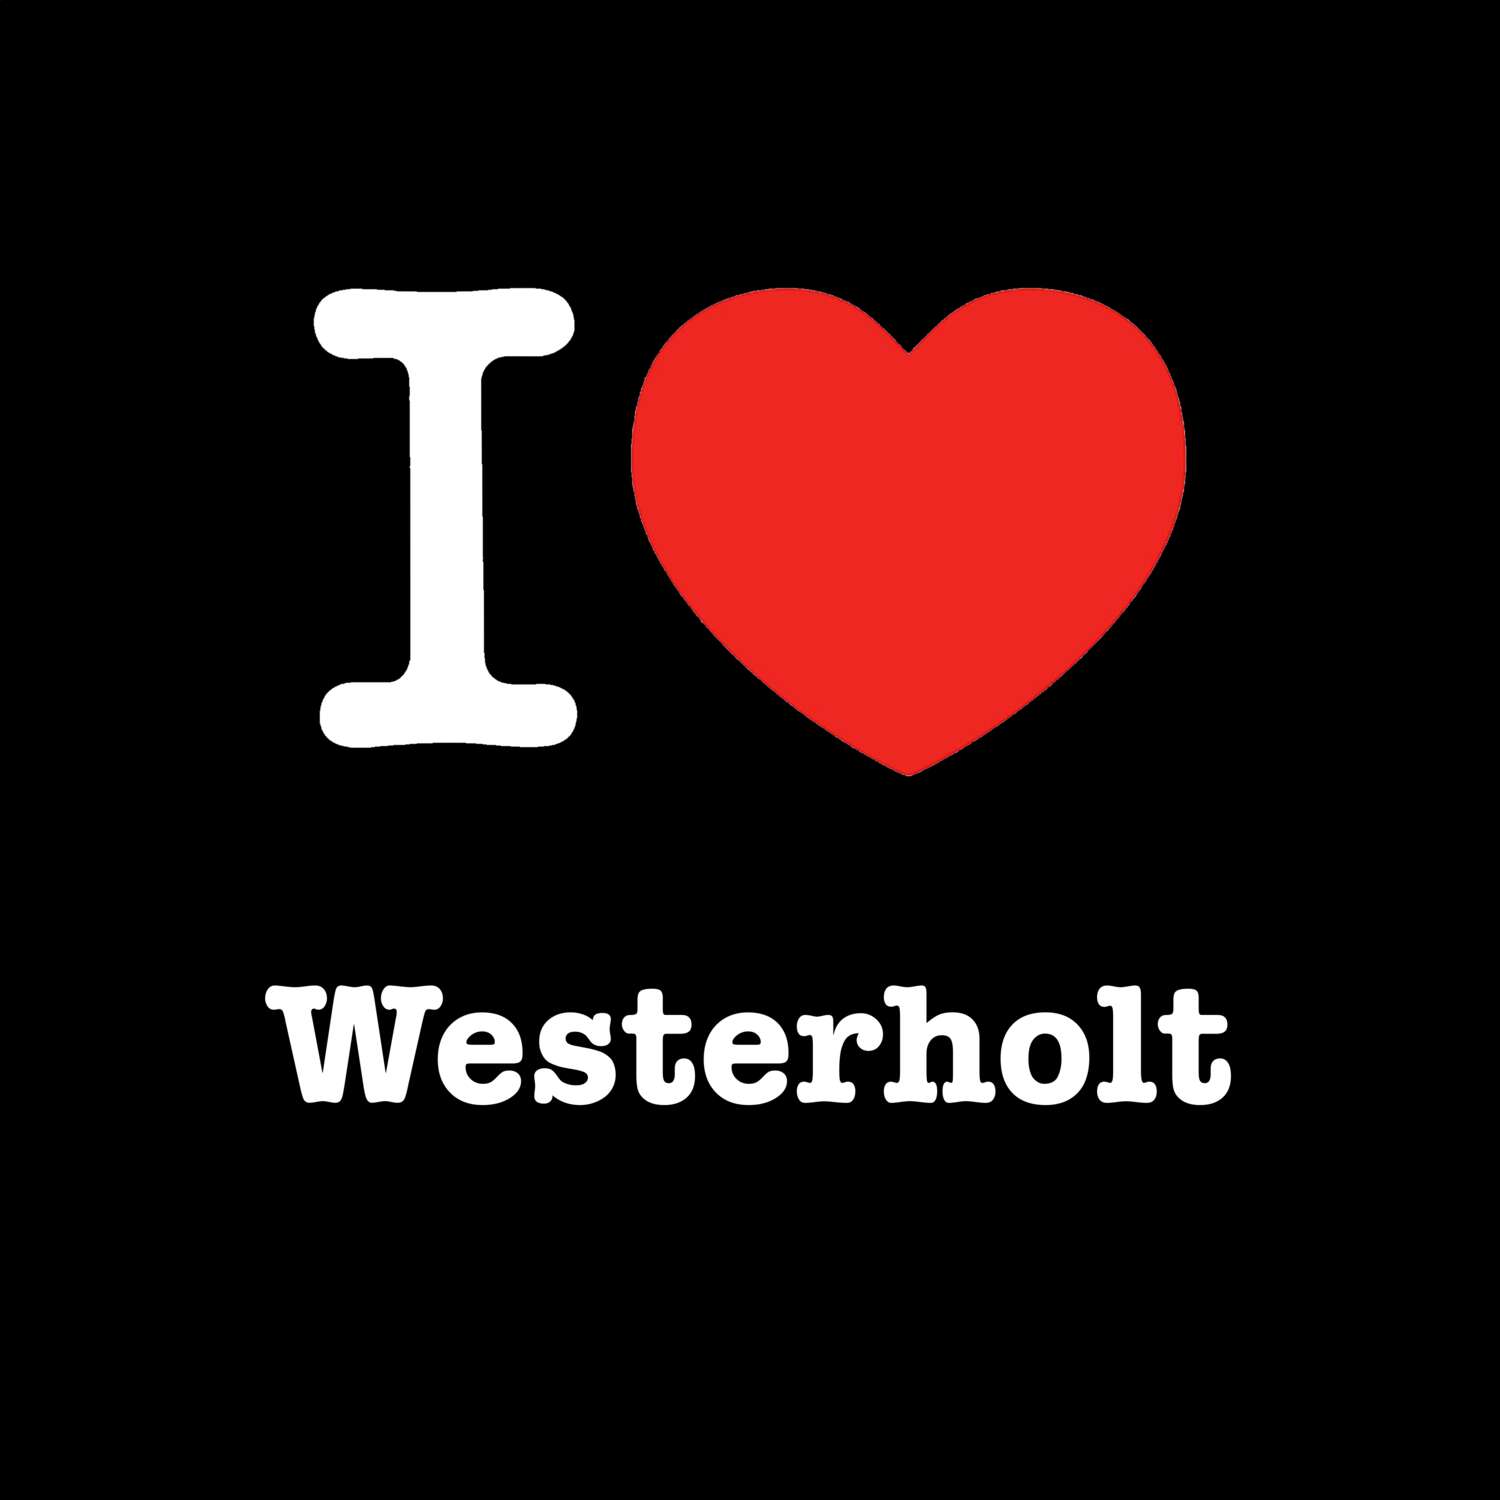 Westerholt T-Shirt »I love«